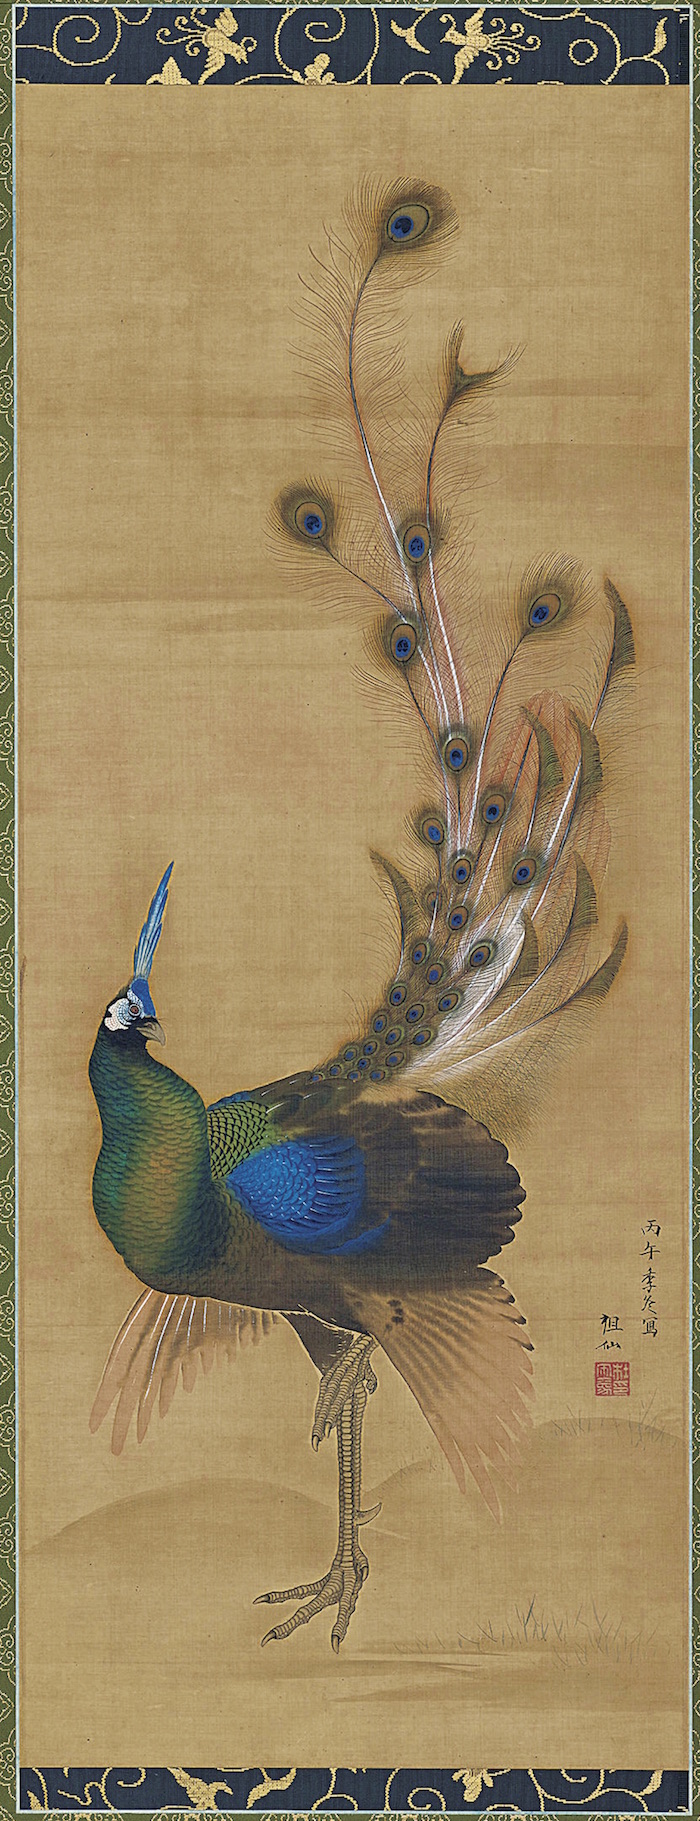 江戸時代絵画の画題でもあった神秘の鳥「孔雀」から生まれたハイ